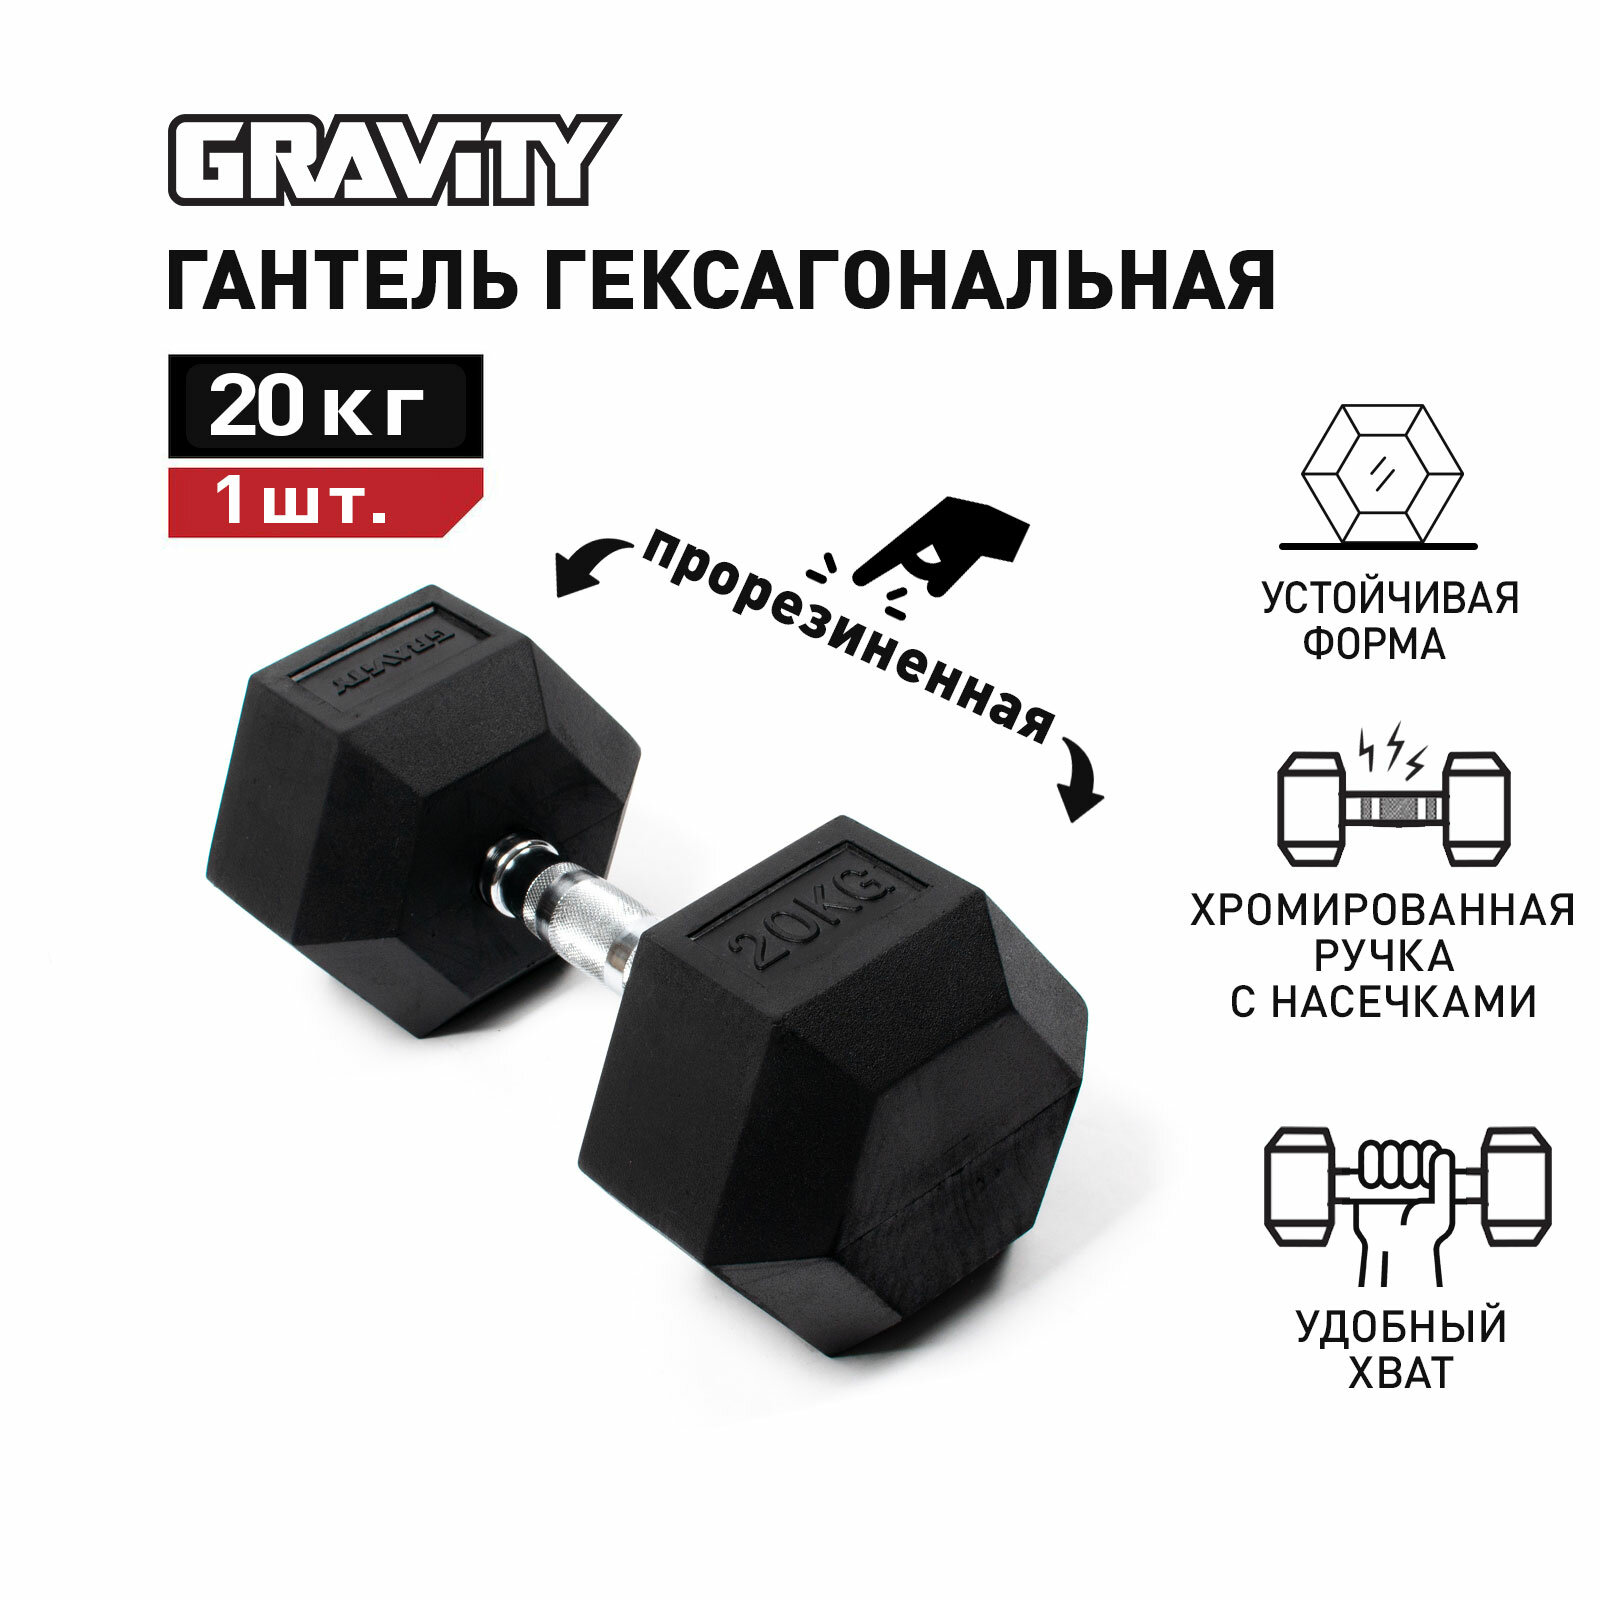 Гексагональная гантель Gravity, вес 20 кг, цвет черный